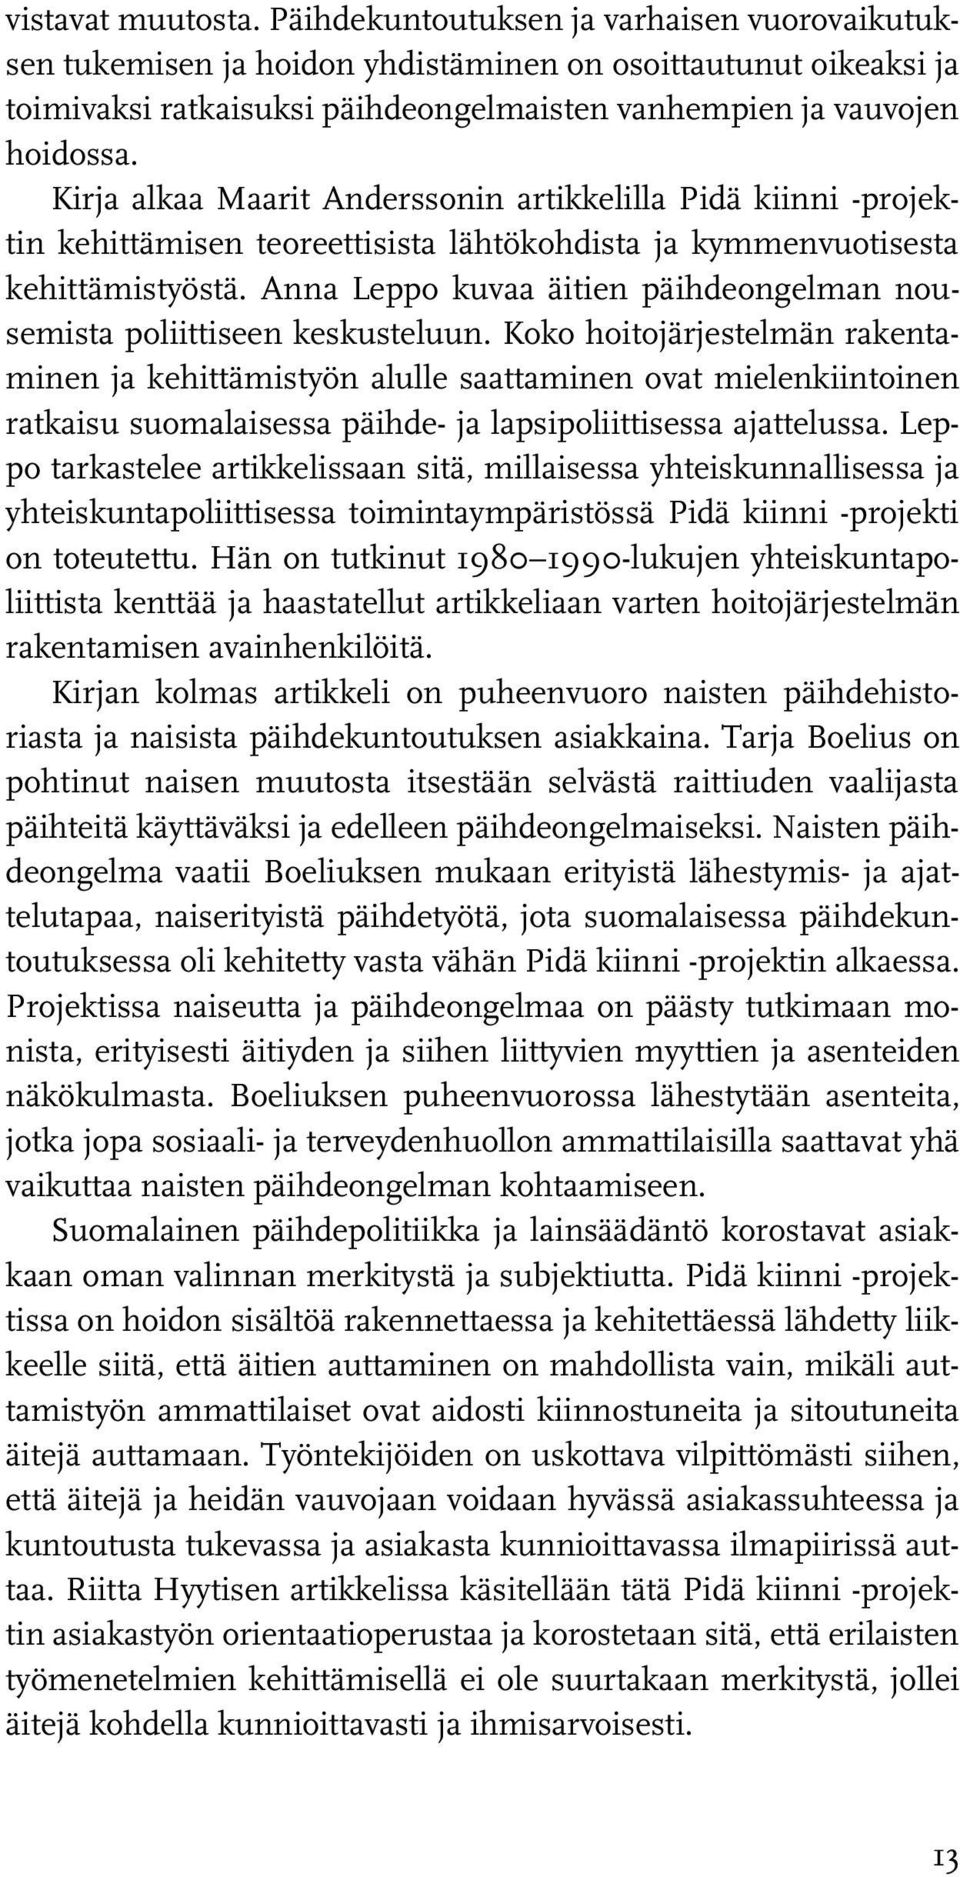 Kirja alkaa Maarit Anderssonin artikkelilla Pidä kiinni -projektin kehittämisen teoreettisista lähtökohdista ja kymmenvuotisesta kehittämistyöstä.